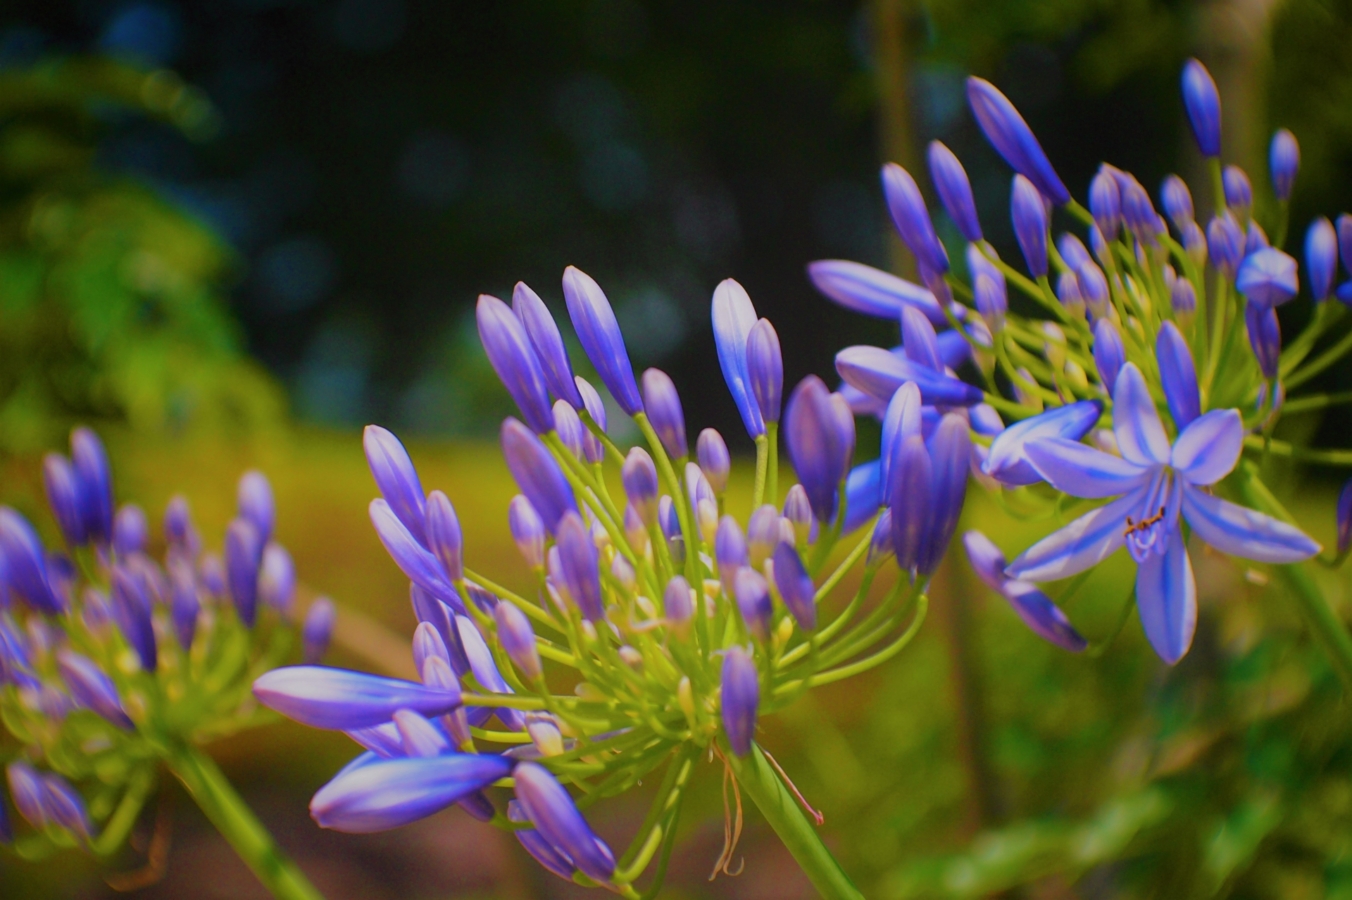 アガパンサスとは 花の特徴 花言葉 育て方 手入れ方法を紹介 Hanasaku